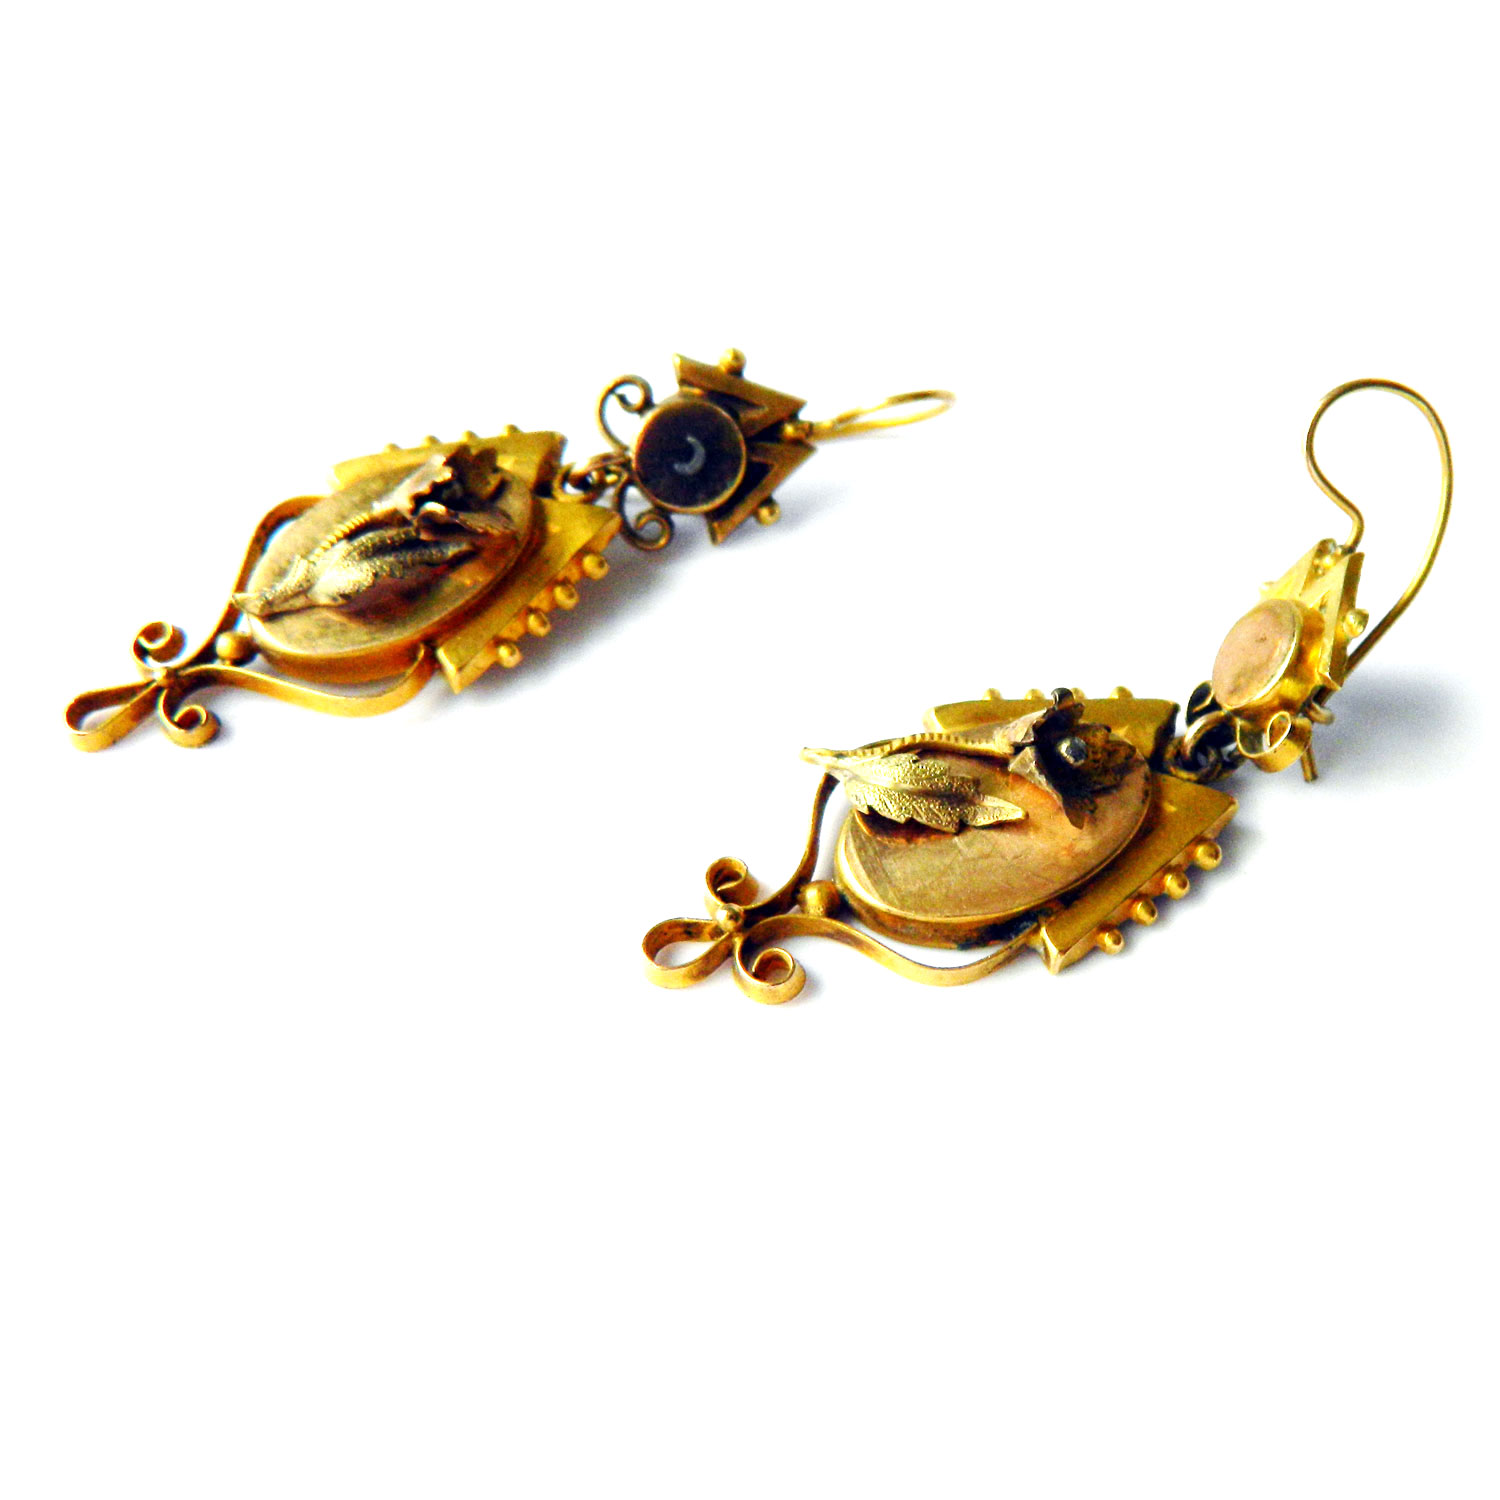 Antique drop earrings